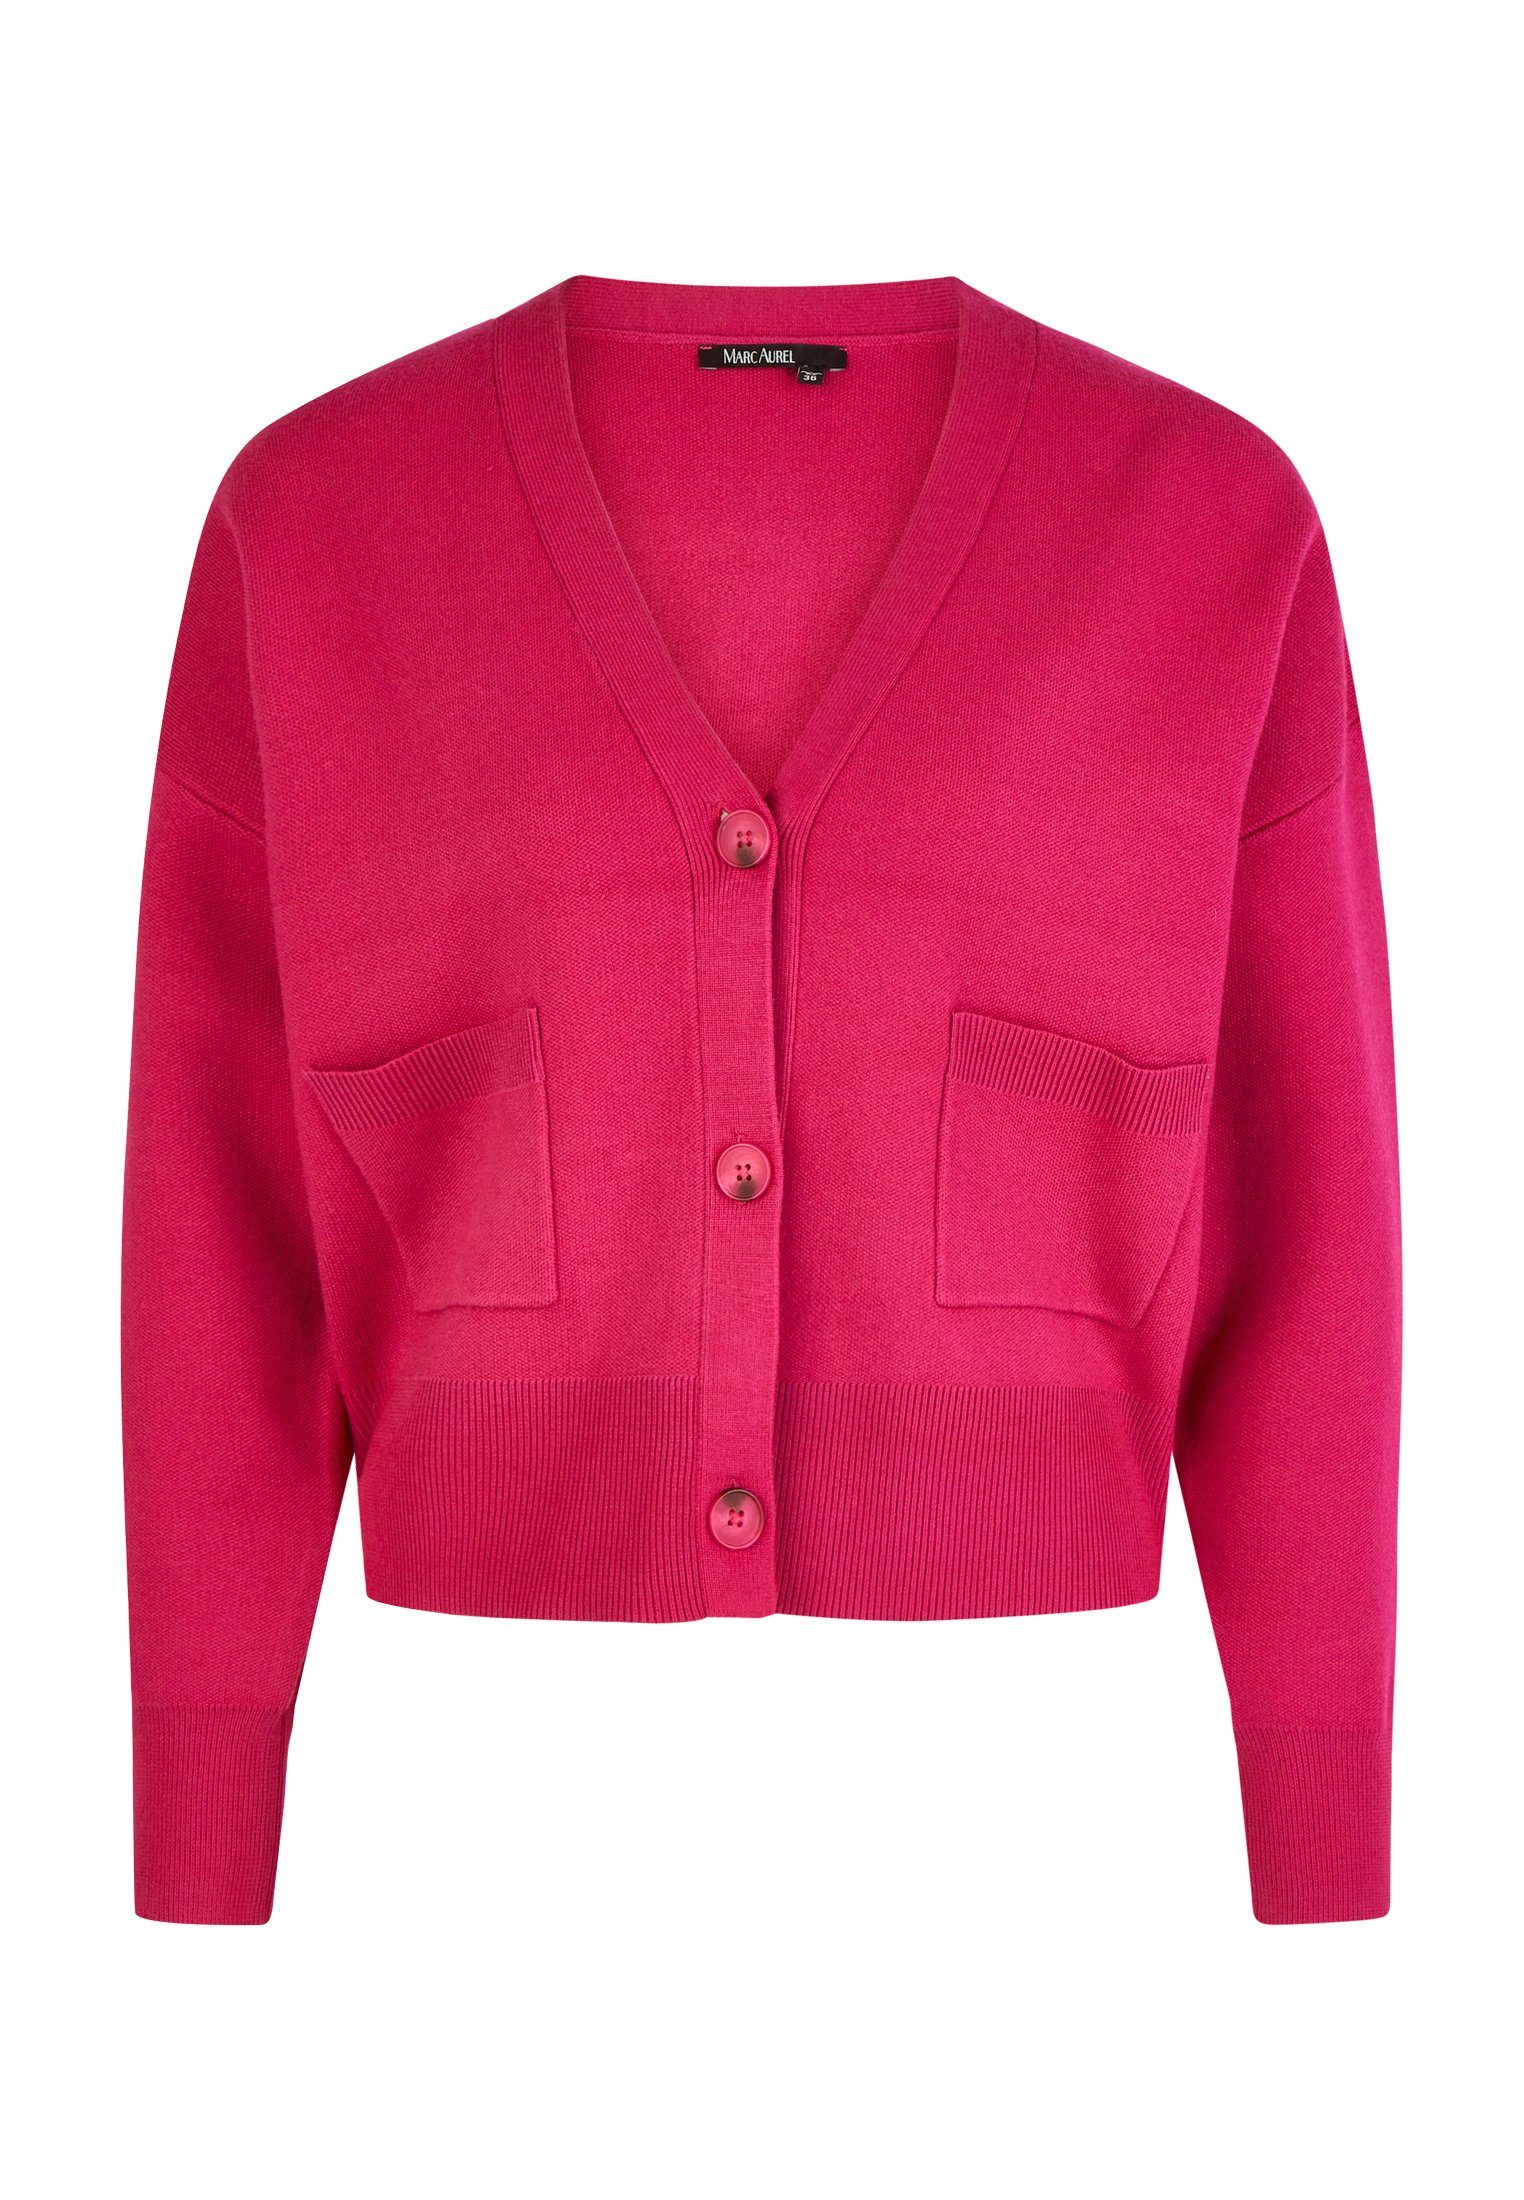 MARC AUREL Cardigan hot pink mit Taschen